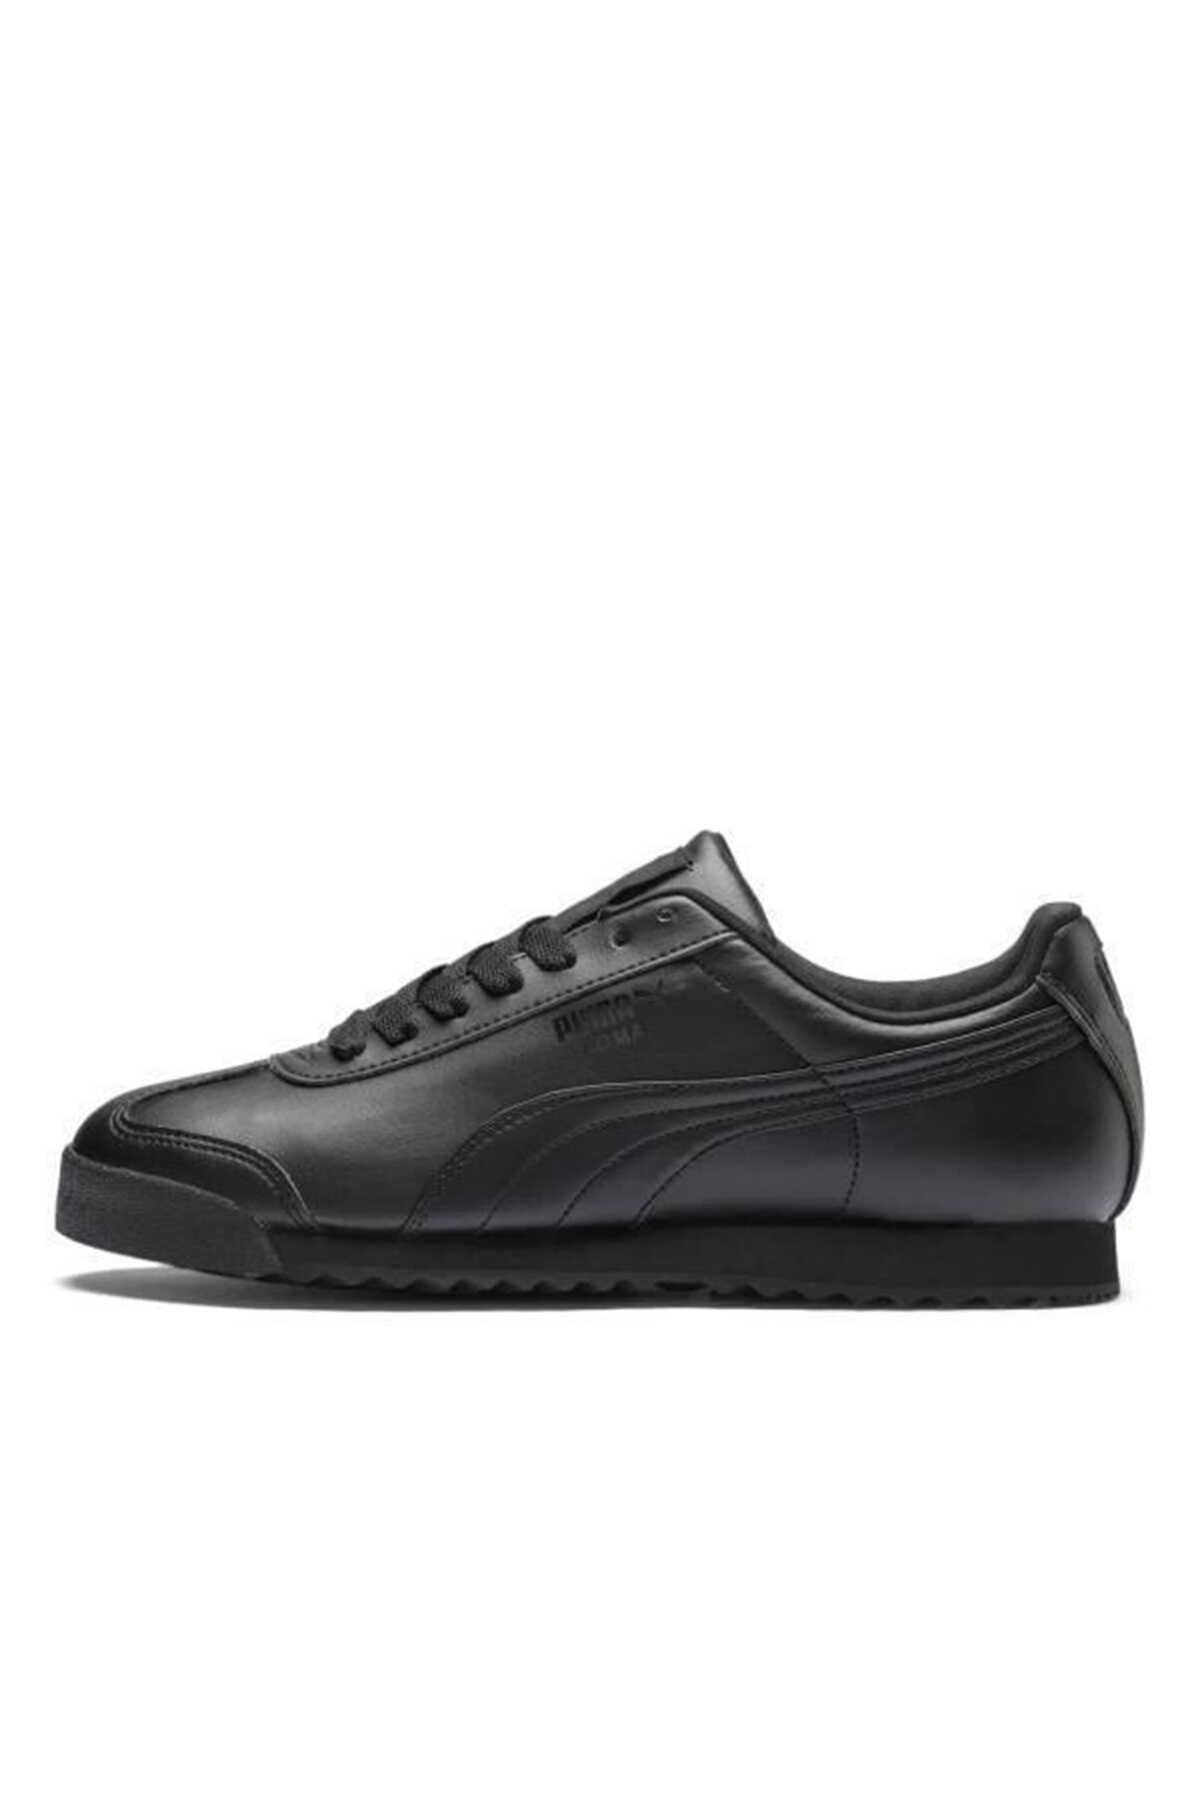 Puma - Puma Roma Basic Erkek Sneaker Ayakkabı Siyah